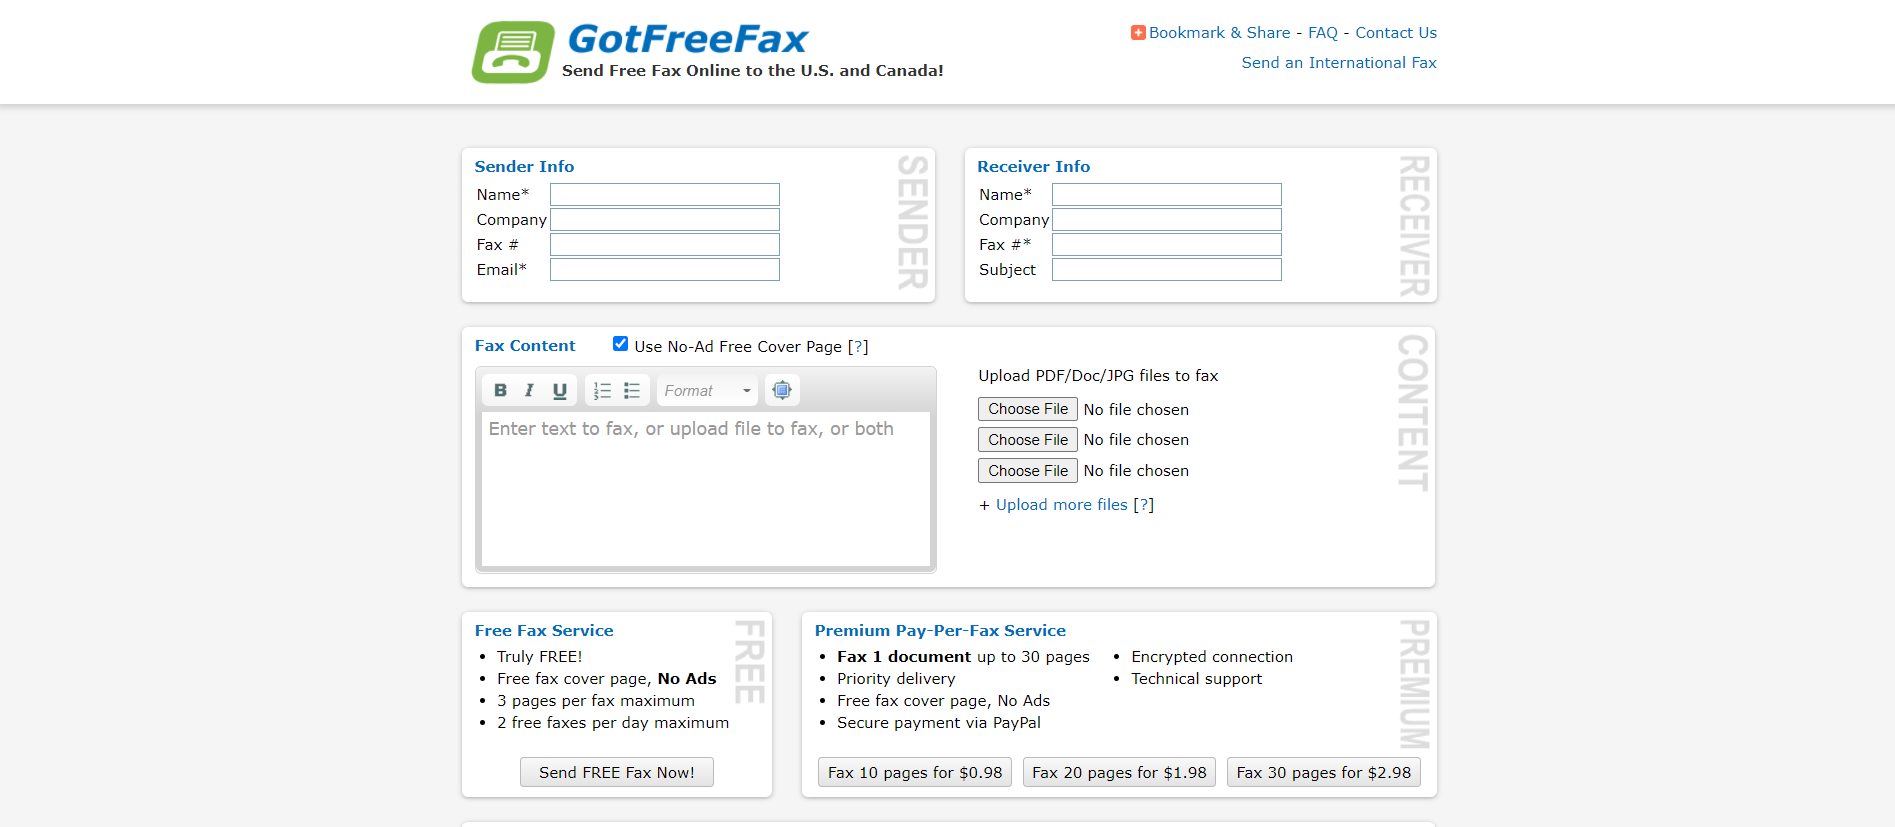 gotfreefax main page - Come inviare un fax gratuitamente dal tuo computer